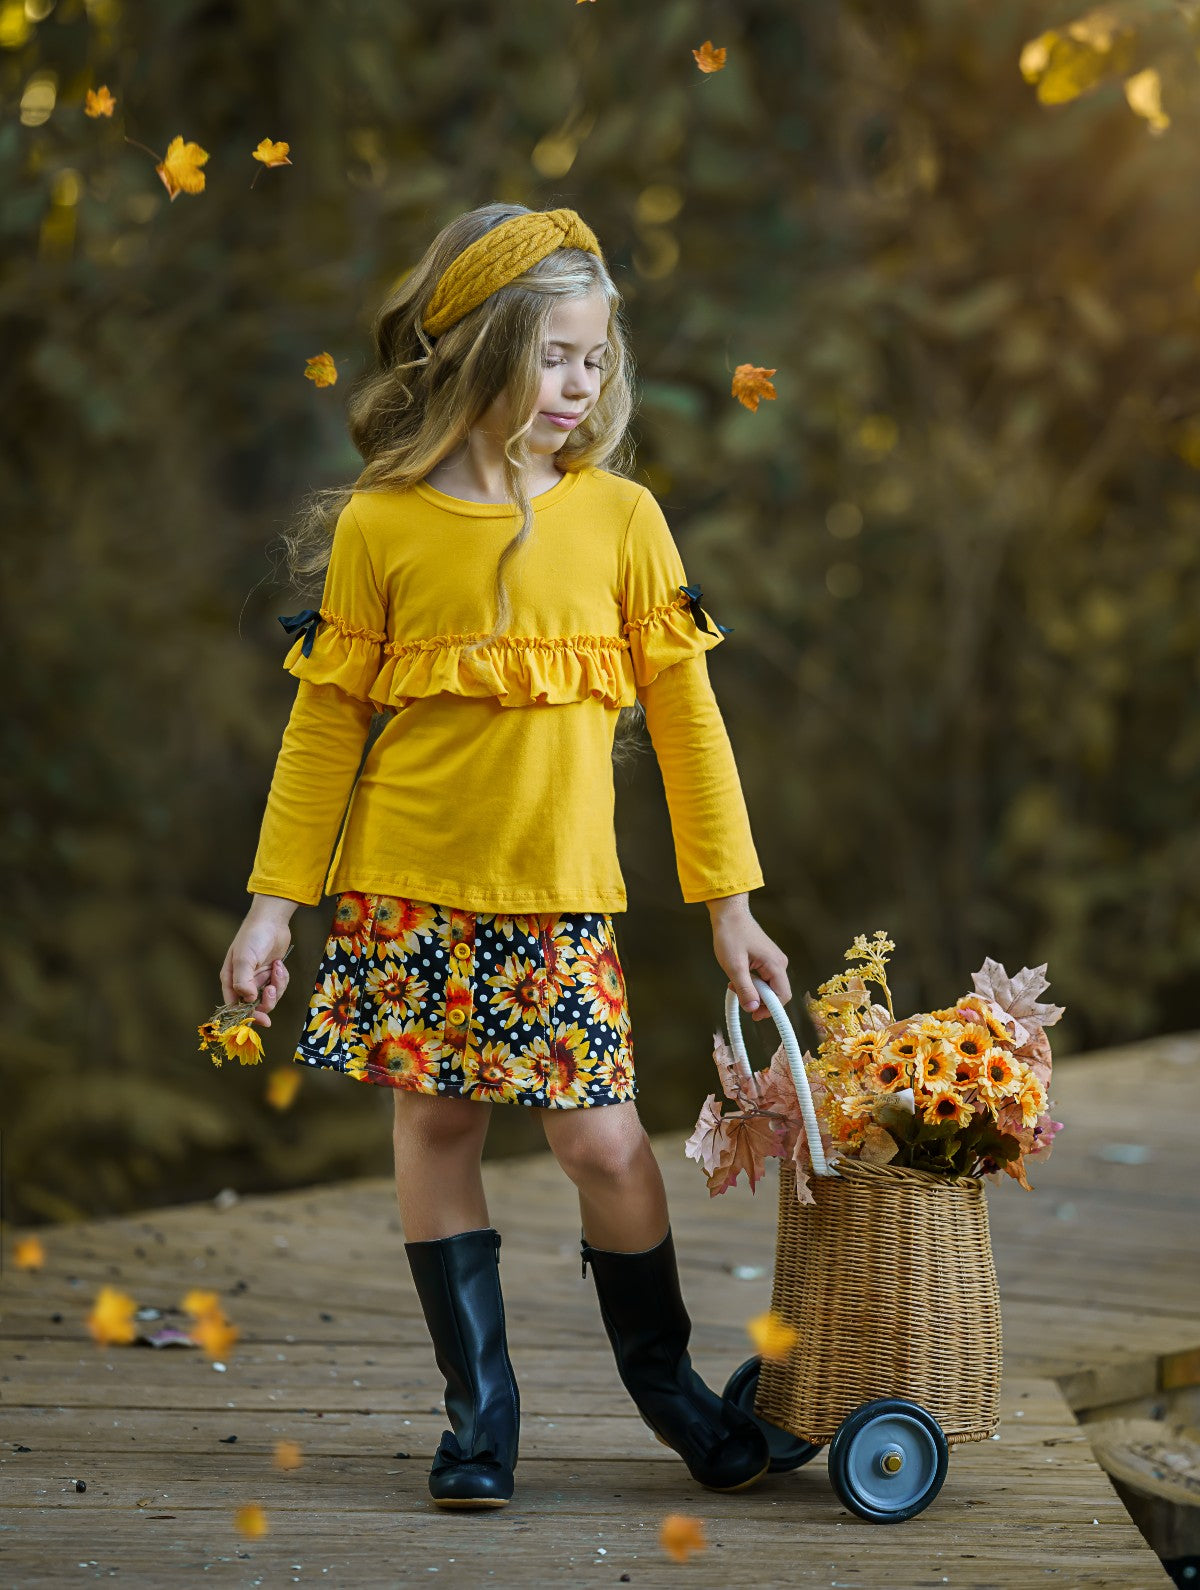 Girls Fall Outfit | Ruffle Top & Sunflower Skirt Set - Mia Belle Girls